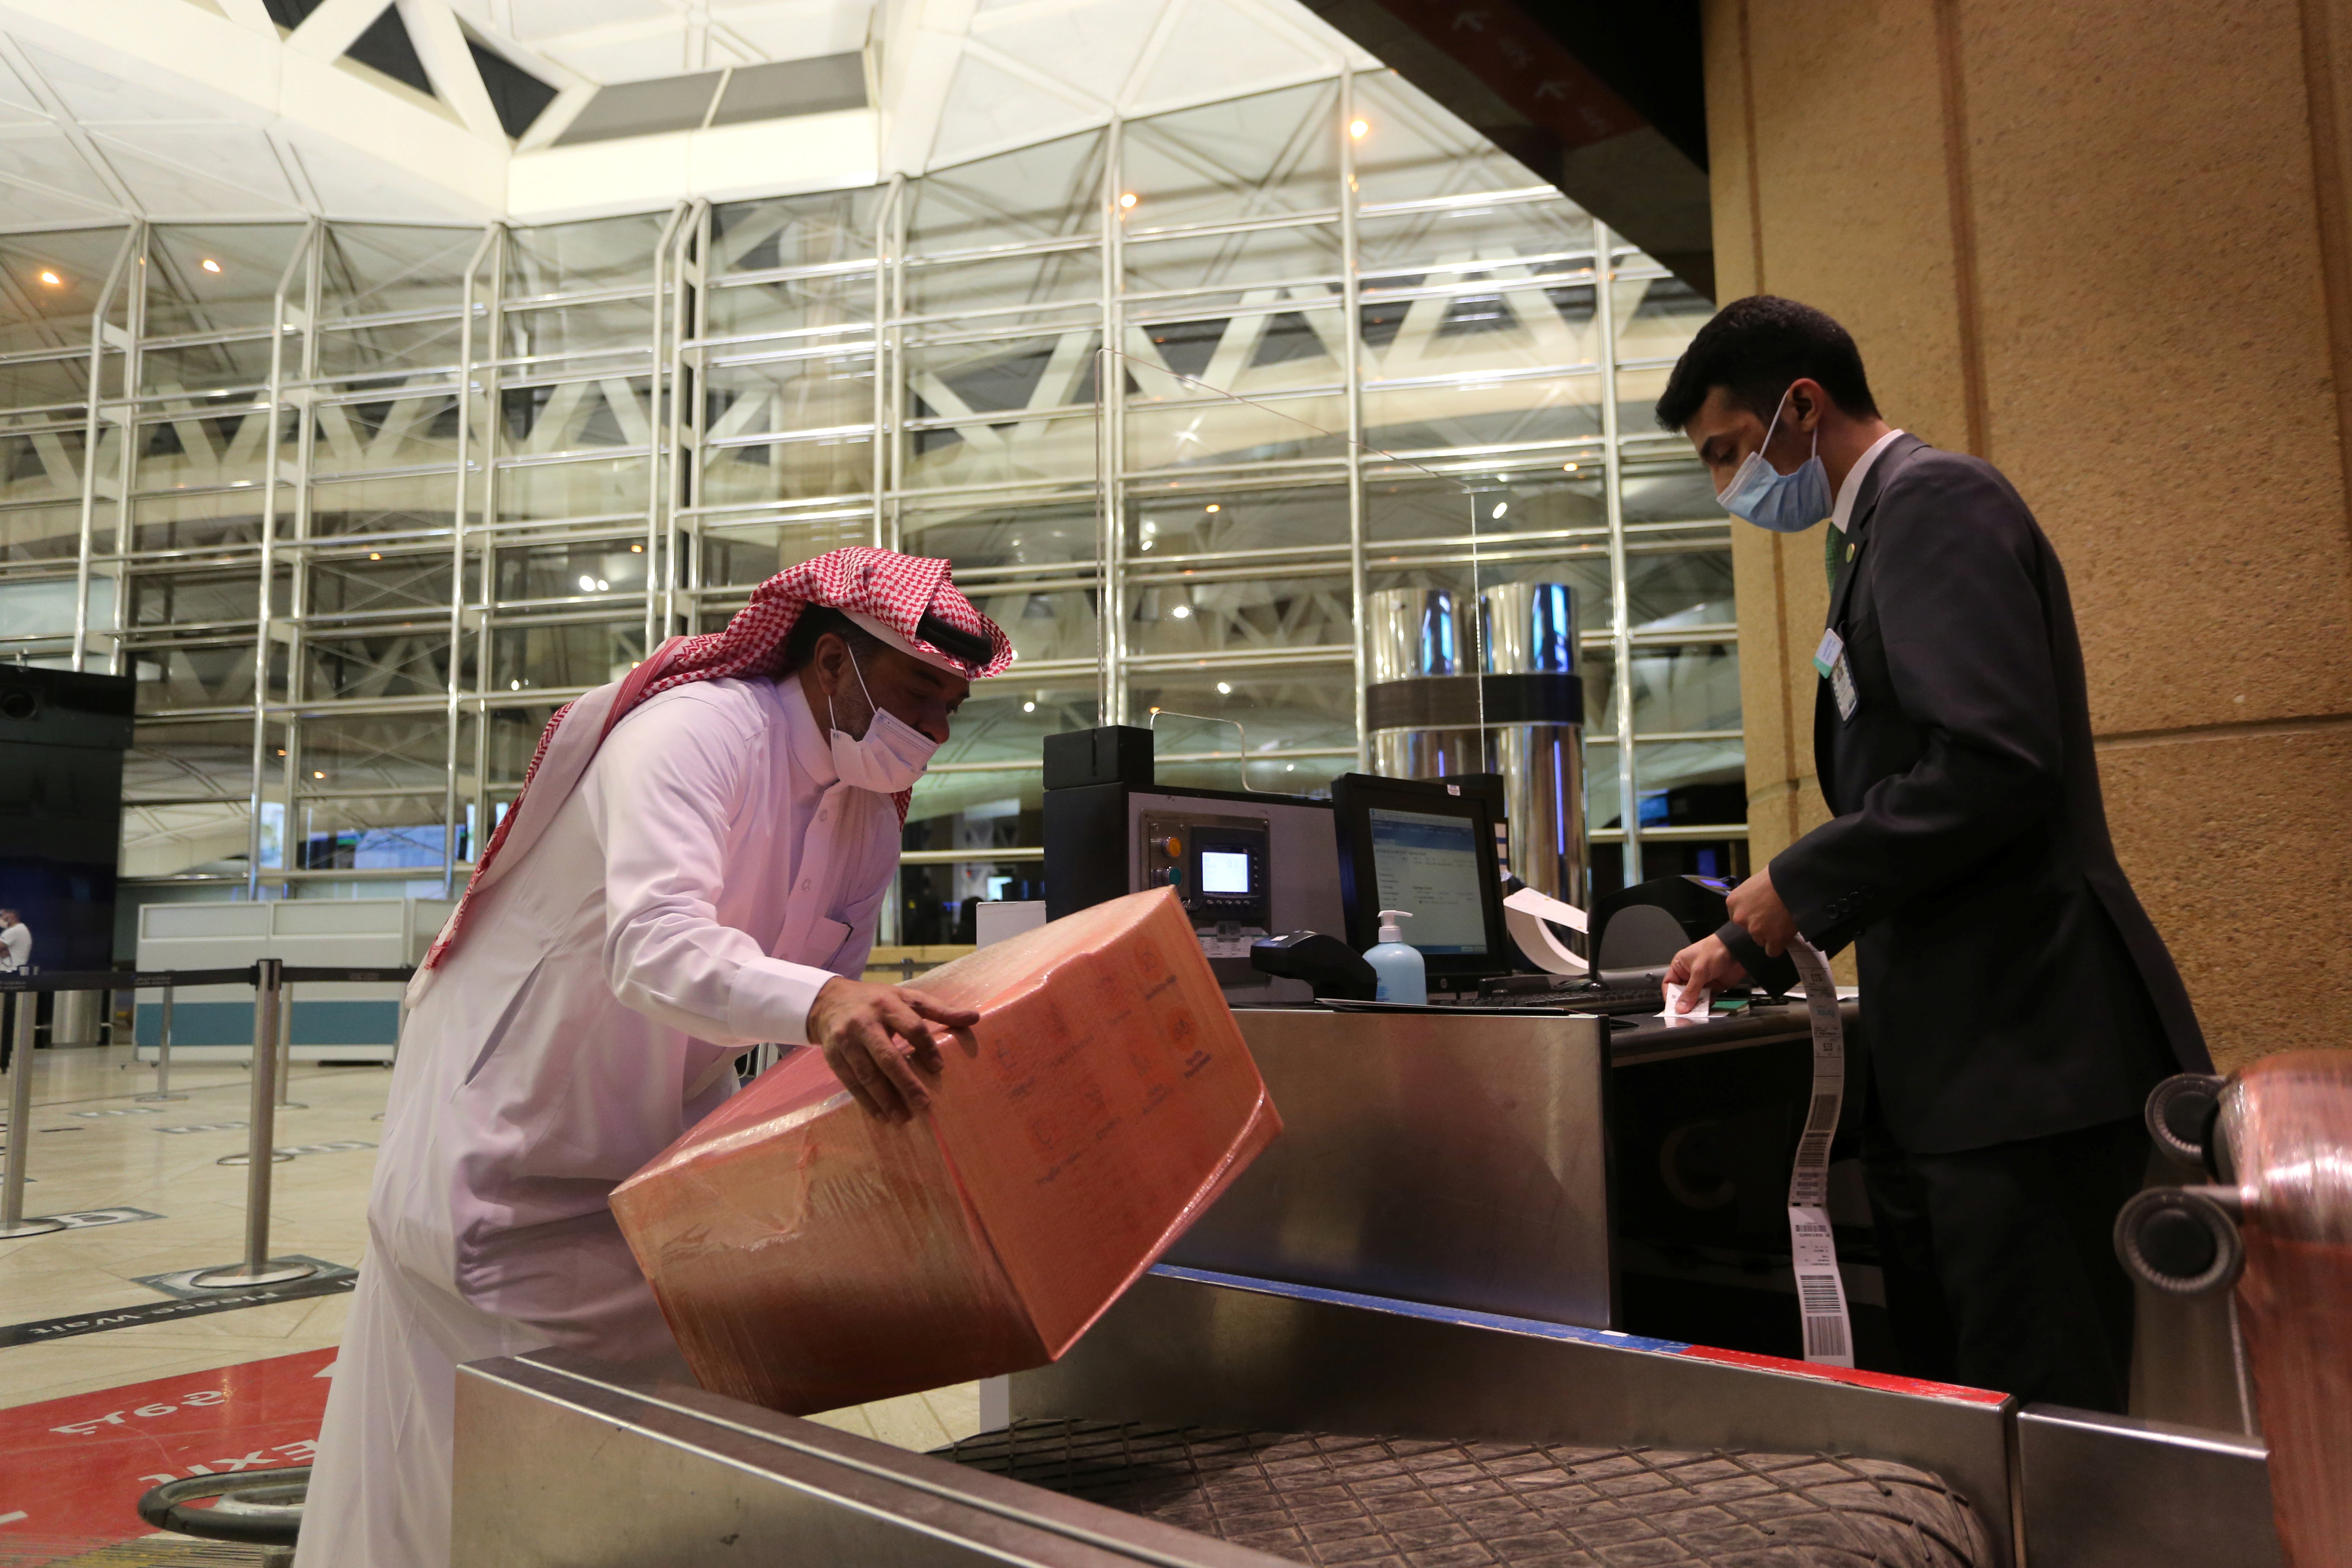 Un hombre saudí con una máscara facial registra su equipaje en el Aeropuerto Internacional Rey Khalid, luego de que las autoridades sauditas levantaran la prohibición de viajar a sus ciudadanos después de catorce meses debido a las restricciones de la enfermedad por coronavirus (COVID-19), en Riad, Arabia Saudita.
REUTERS/Ahmed Yosri